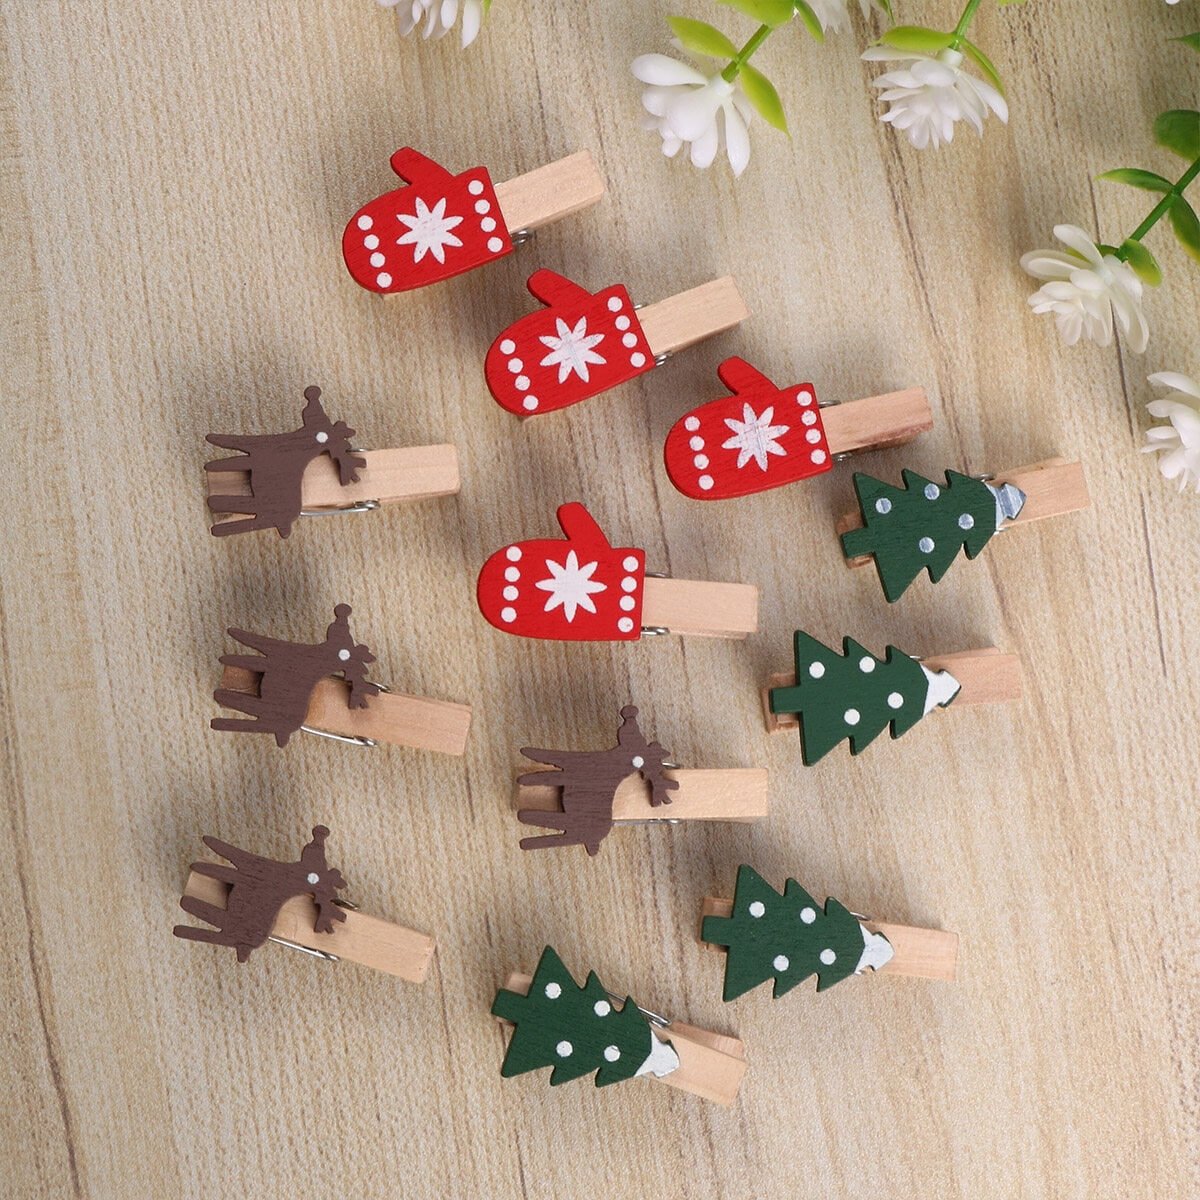 Didiseaon 50 Pcs Baby Clothes Pins Clothespins Photo Paper Peg Pin Wood  Clothes Pins Christmas Pegs Santa Pictures Santa Pin Music Note Decor DIY